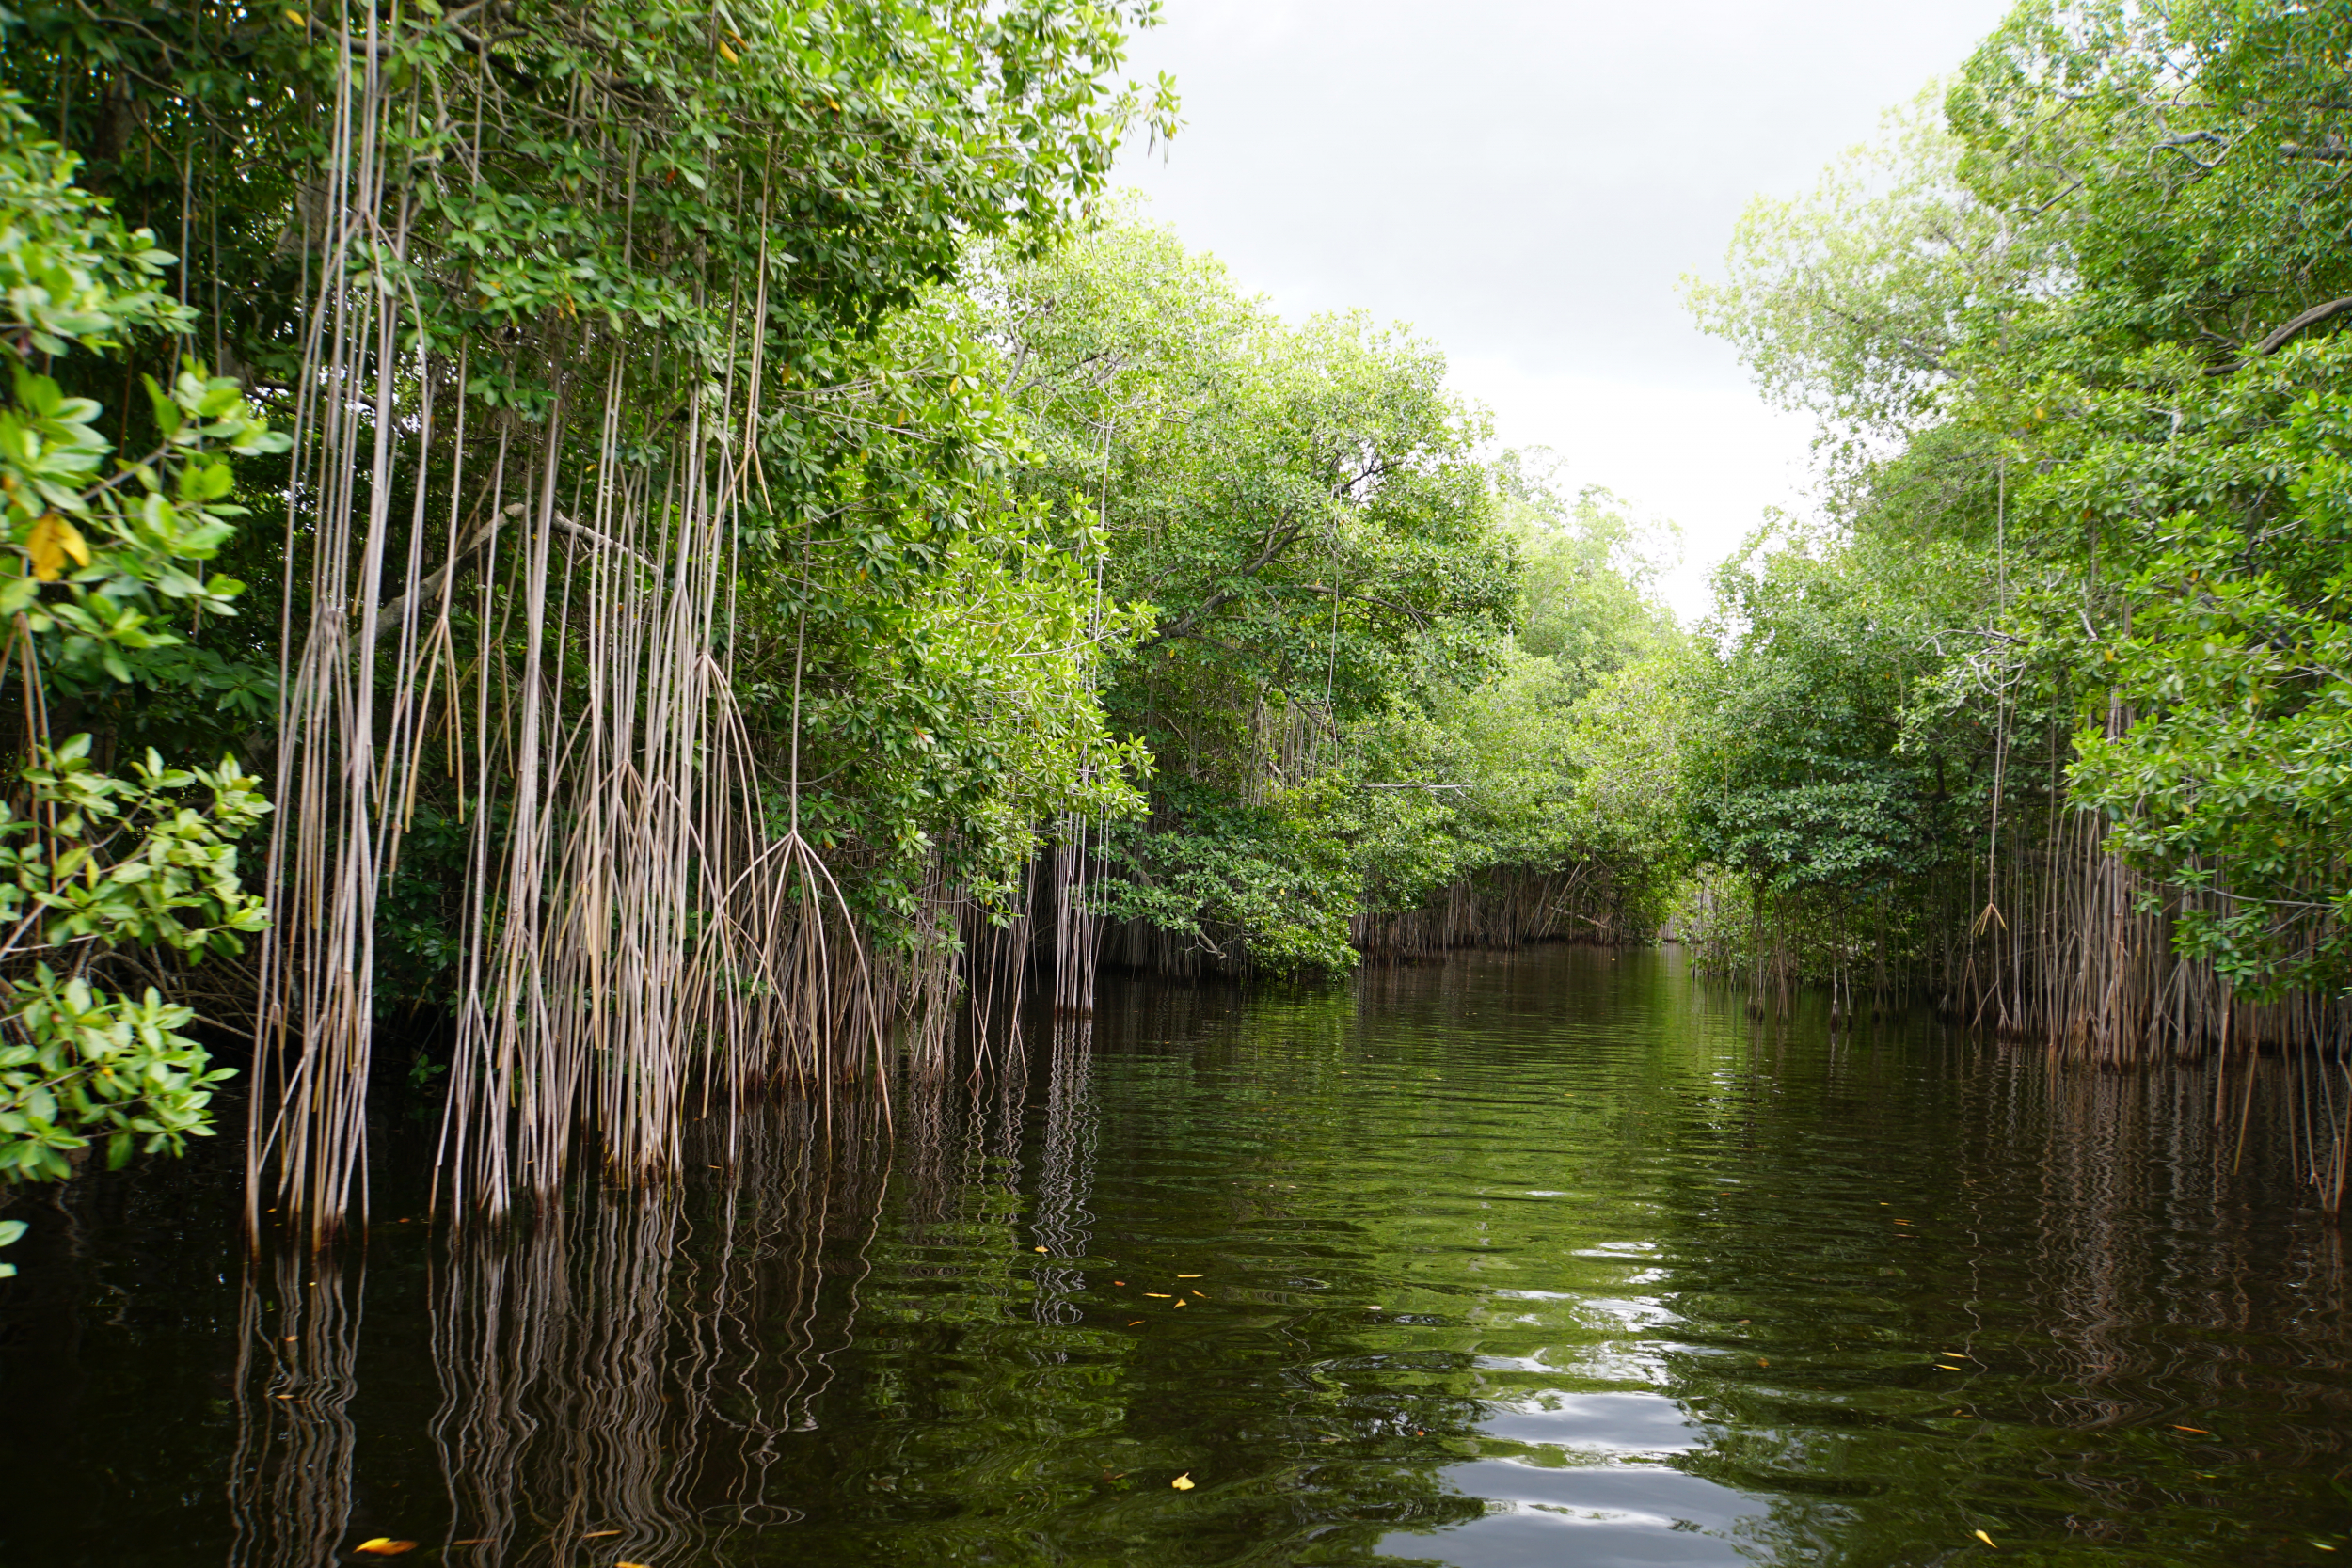 49. Mangroves on Black River